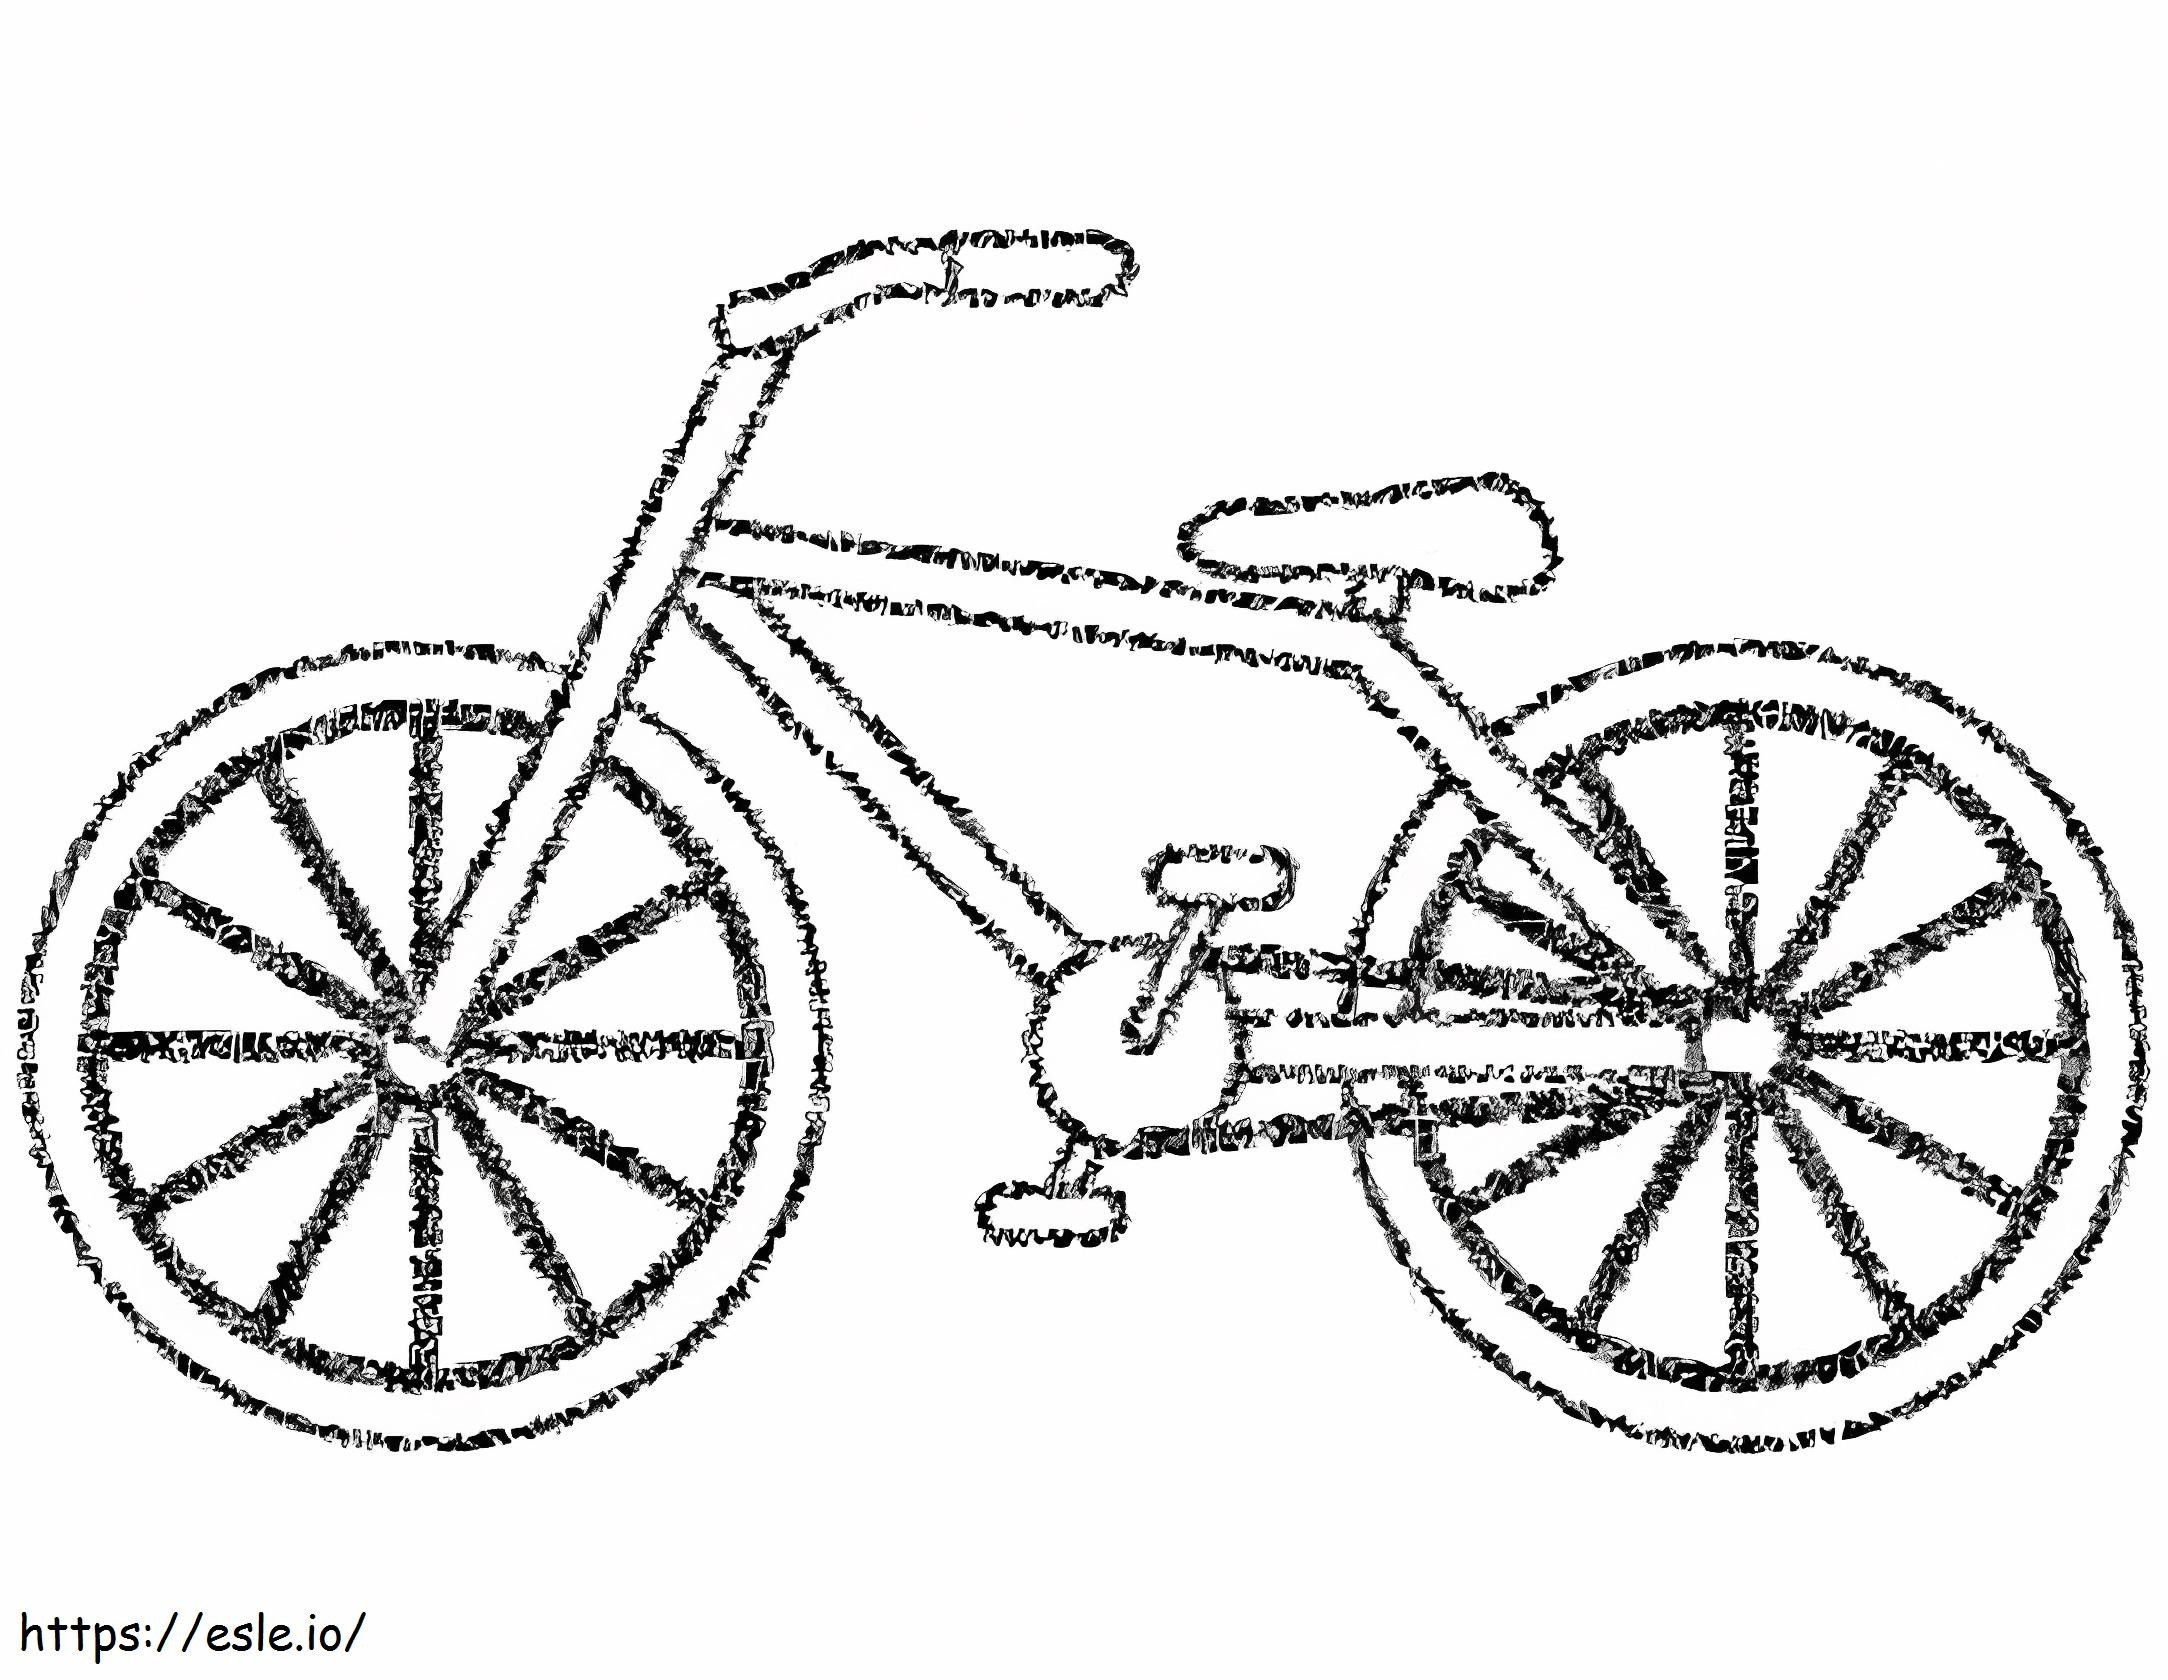 Fahrrad zum Ausdrucken ausmalbilder